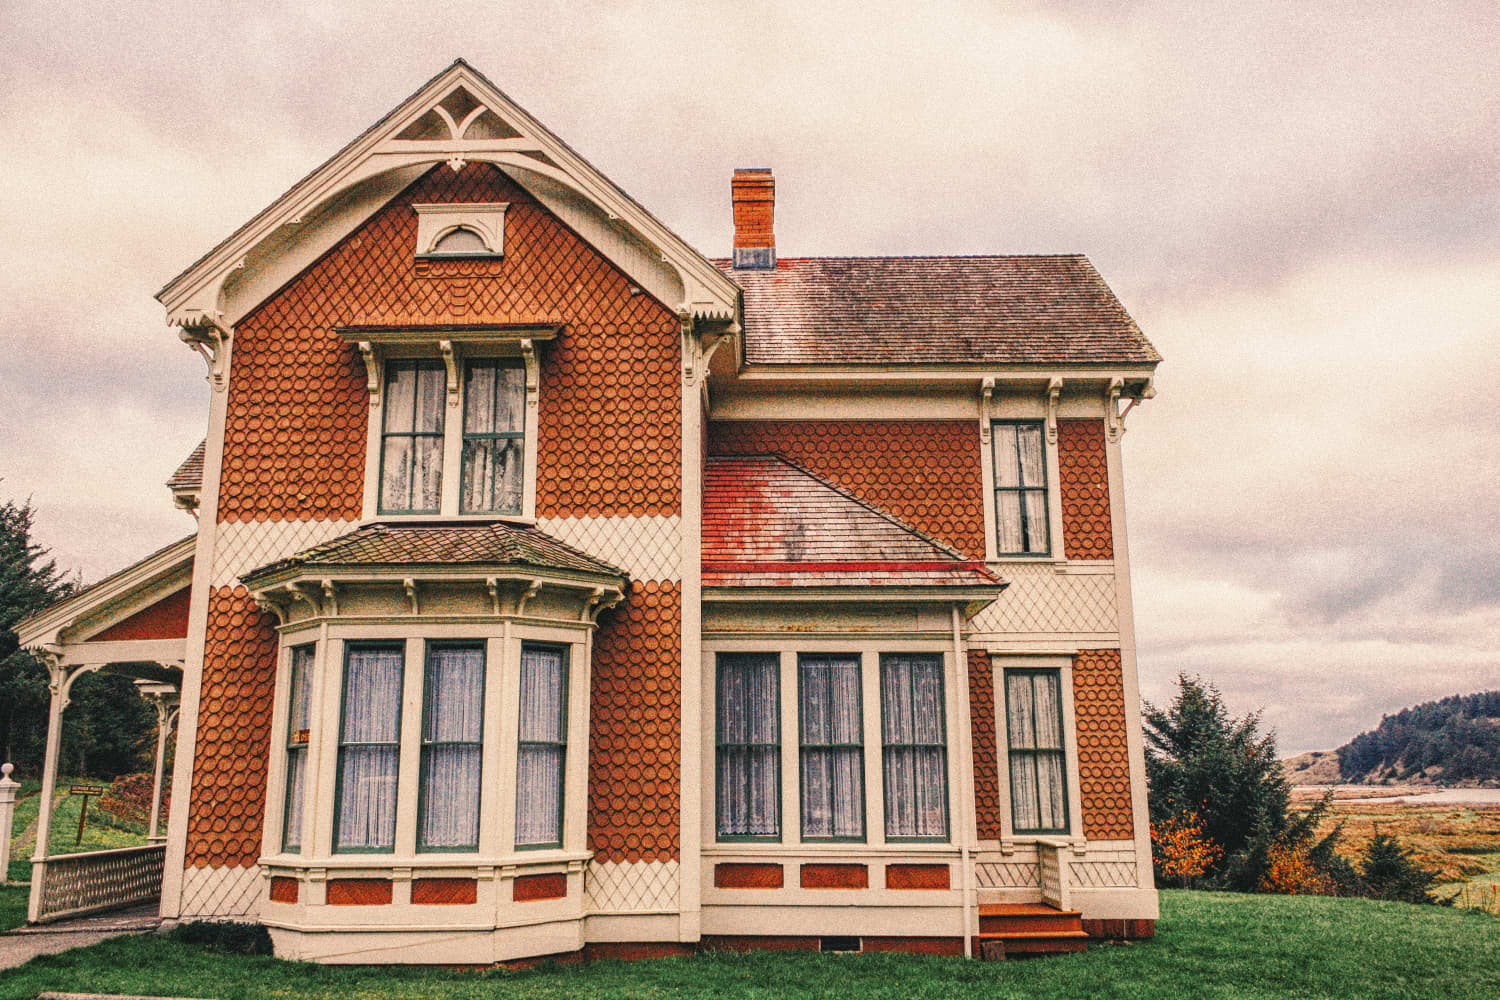 Hororová šou: Strašidelný dom by ste si mohli kúpiť bez toho, aby ste o tom vedeli